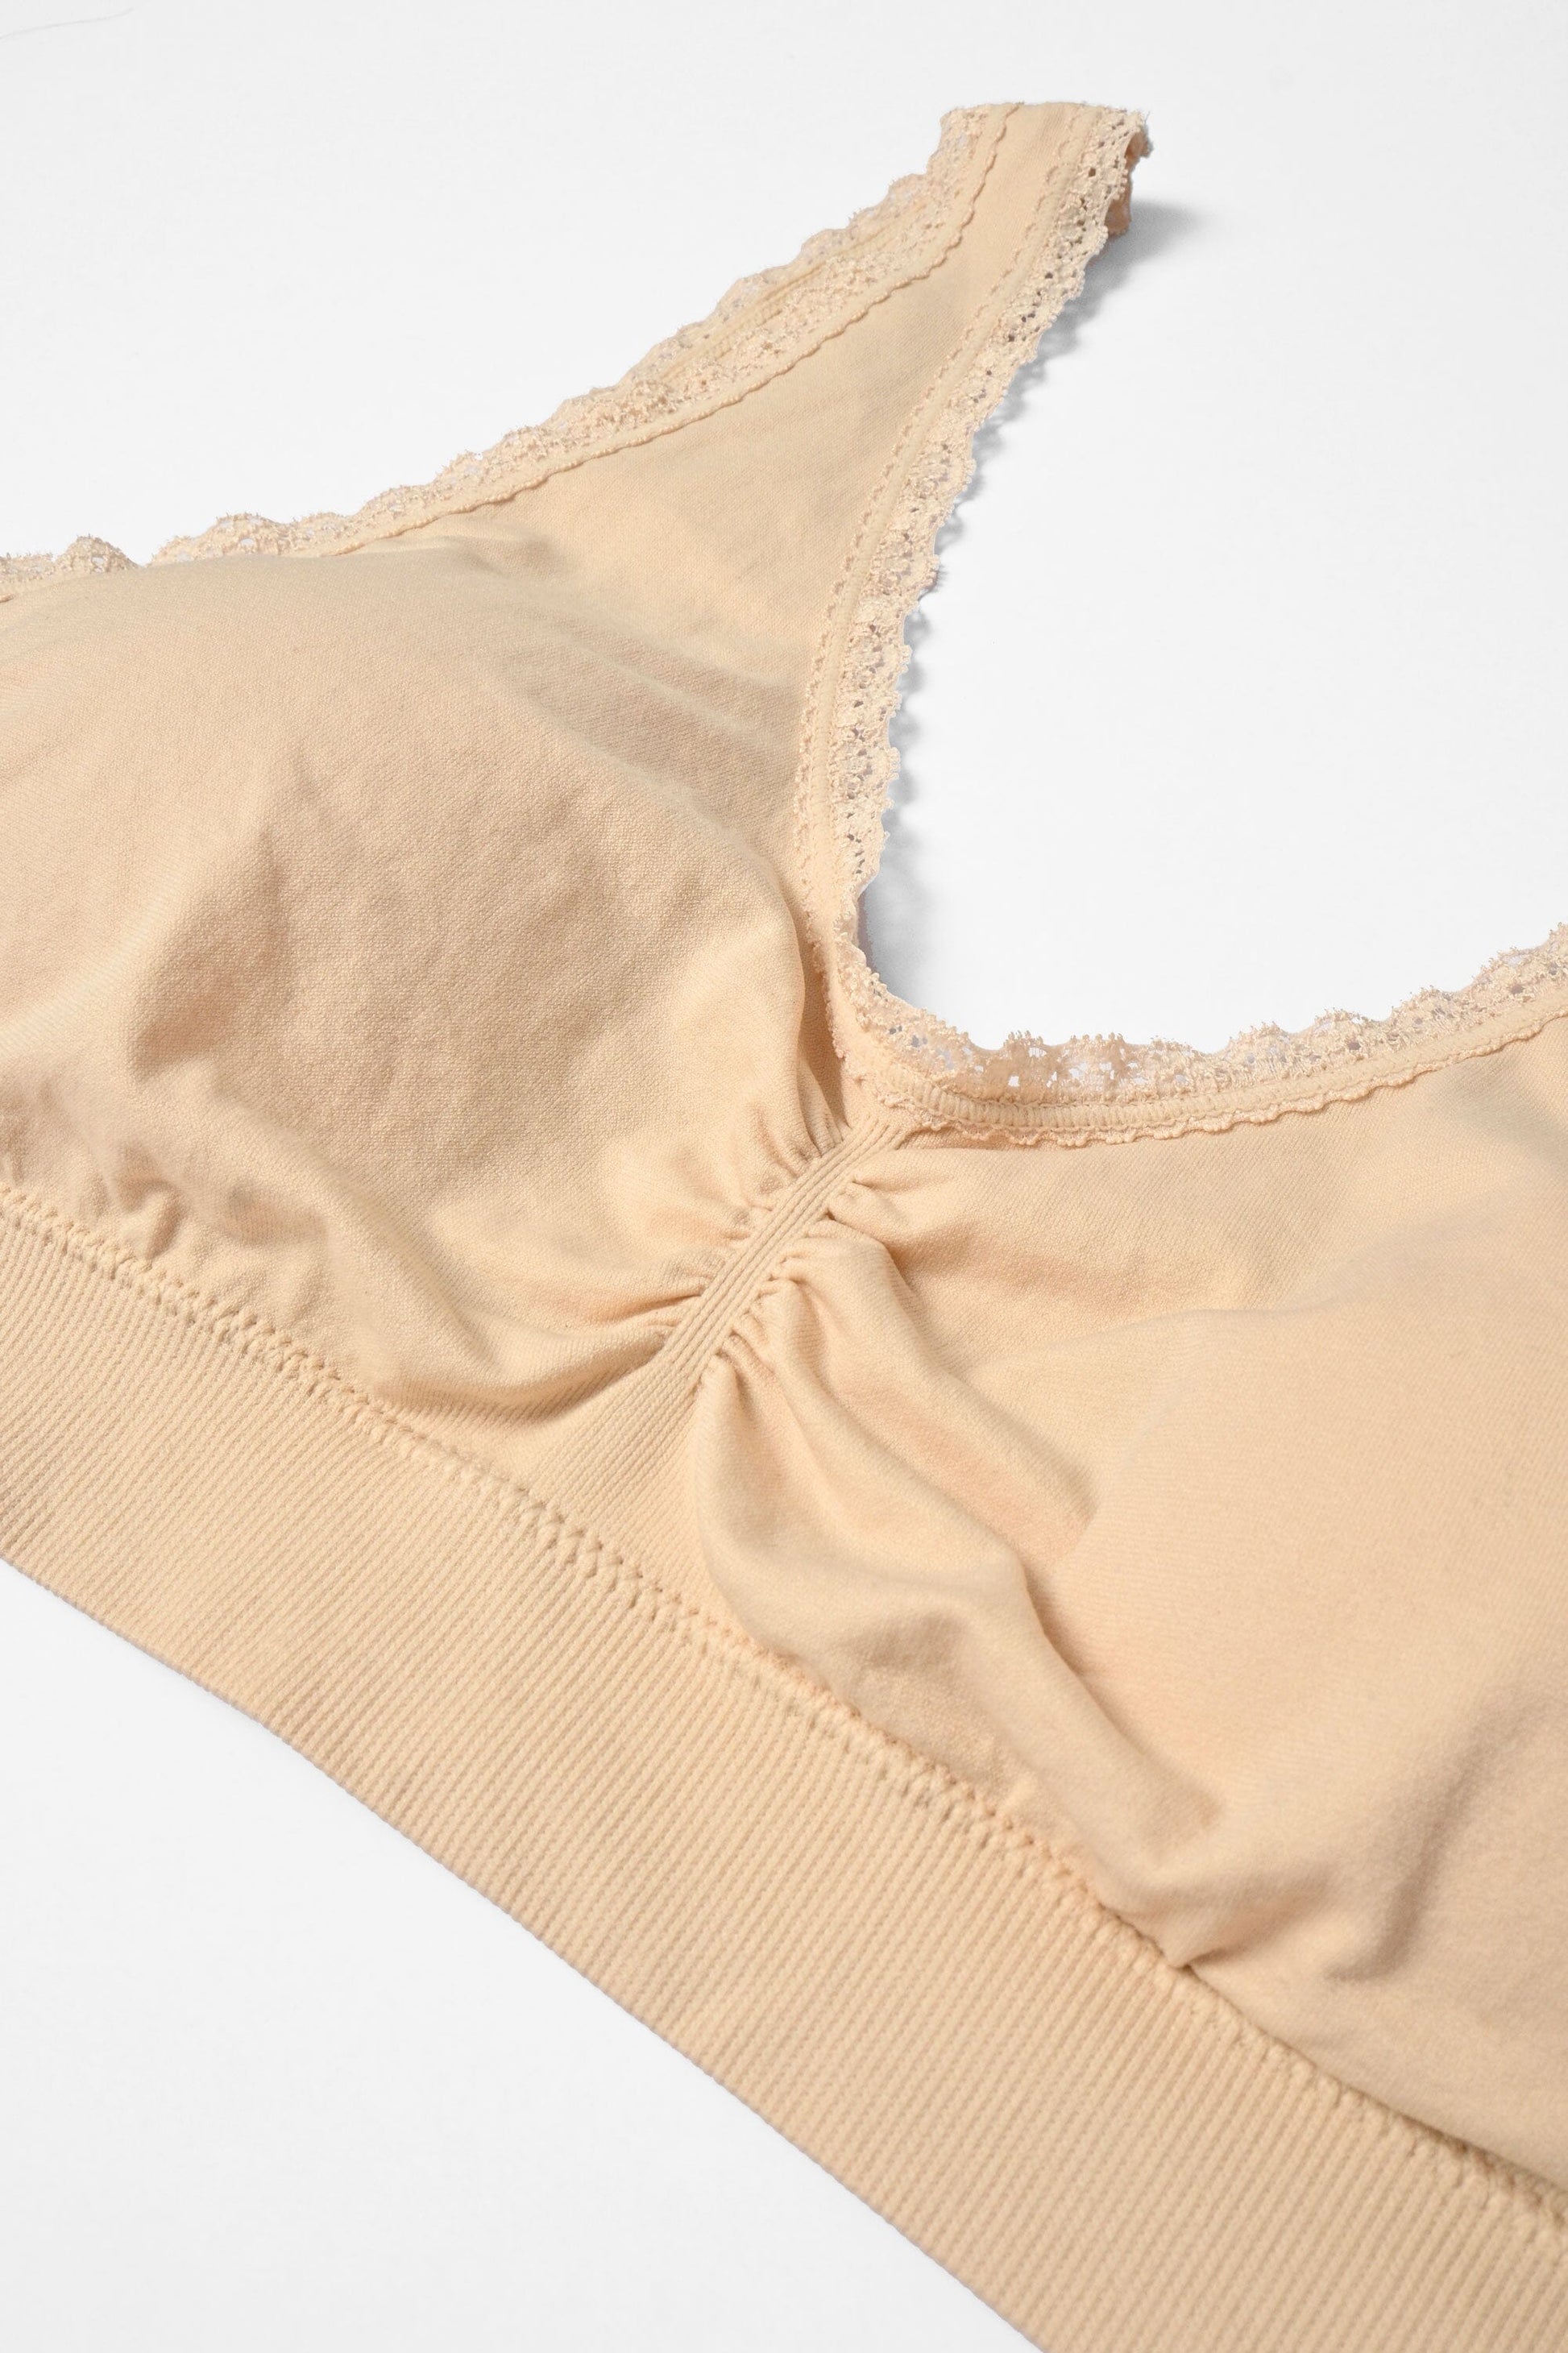 Women's Lace Design Removable Padded Bra & Underwear Set Women's Lingerie RAM 